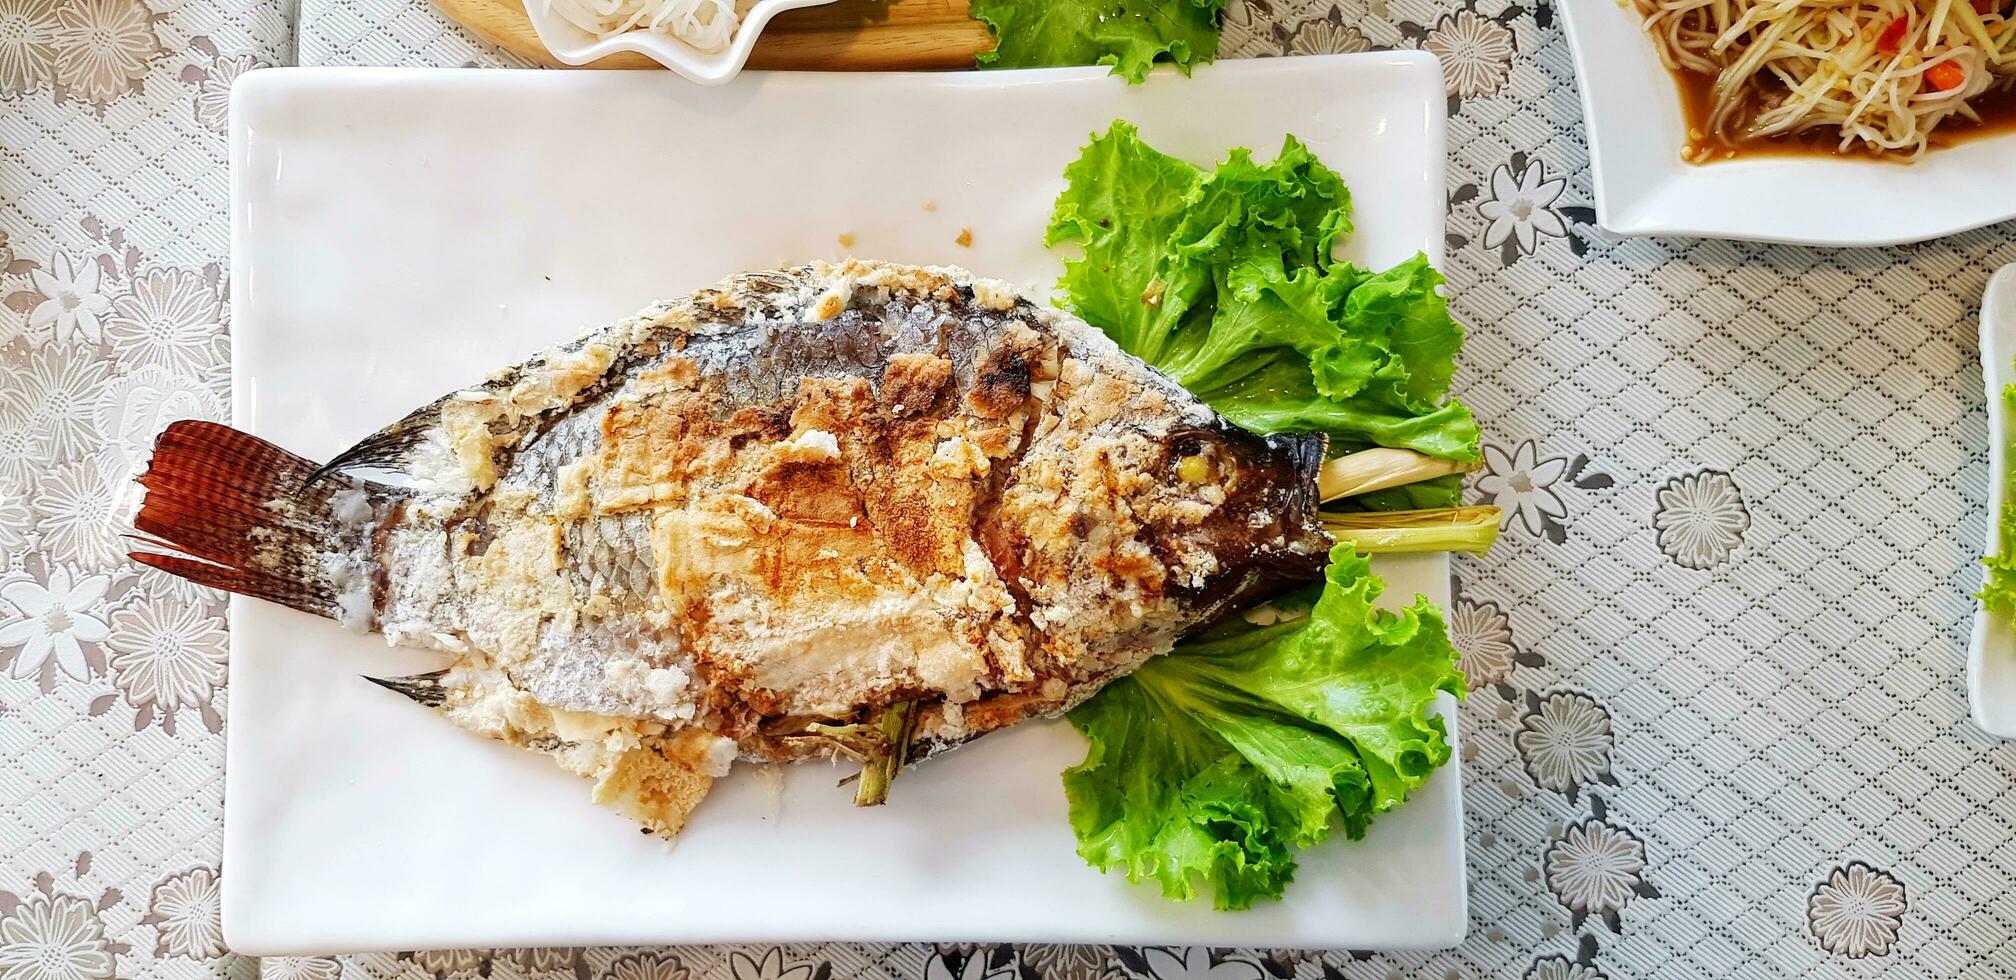 Salzbrennen Tilapia Fisch mit Grün Kohl Blätter auf Weiß Gericht beim thailändisch Restaurant. diese Essen Koch durch gegrillt mit Zutaten von thailändisch Kraut Innerhalb Lebensmittel. asiatisch und gesund Leben Stil Essen. foto